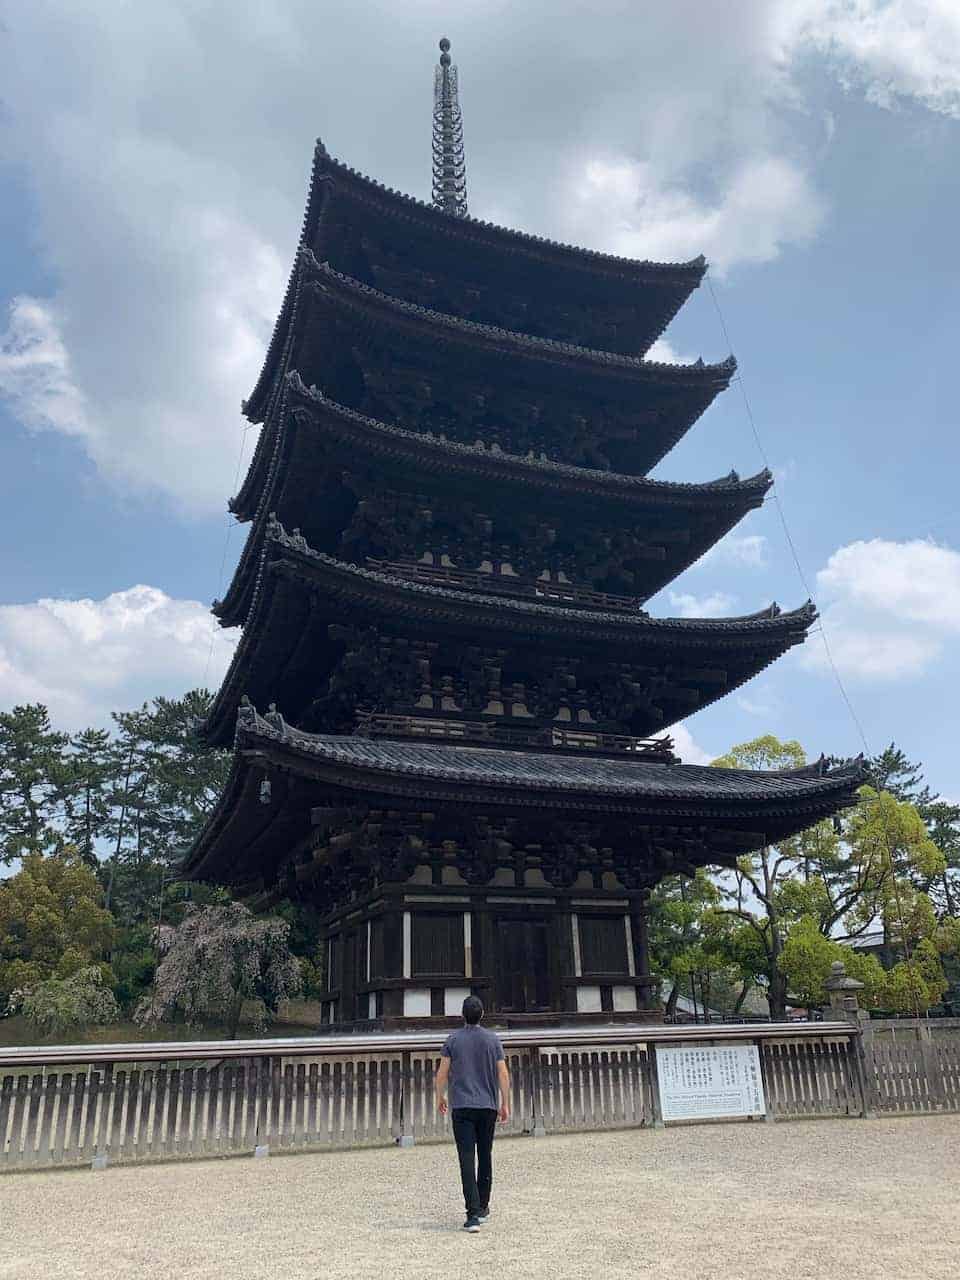 Kofukuji Five Storied Pagoda